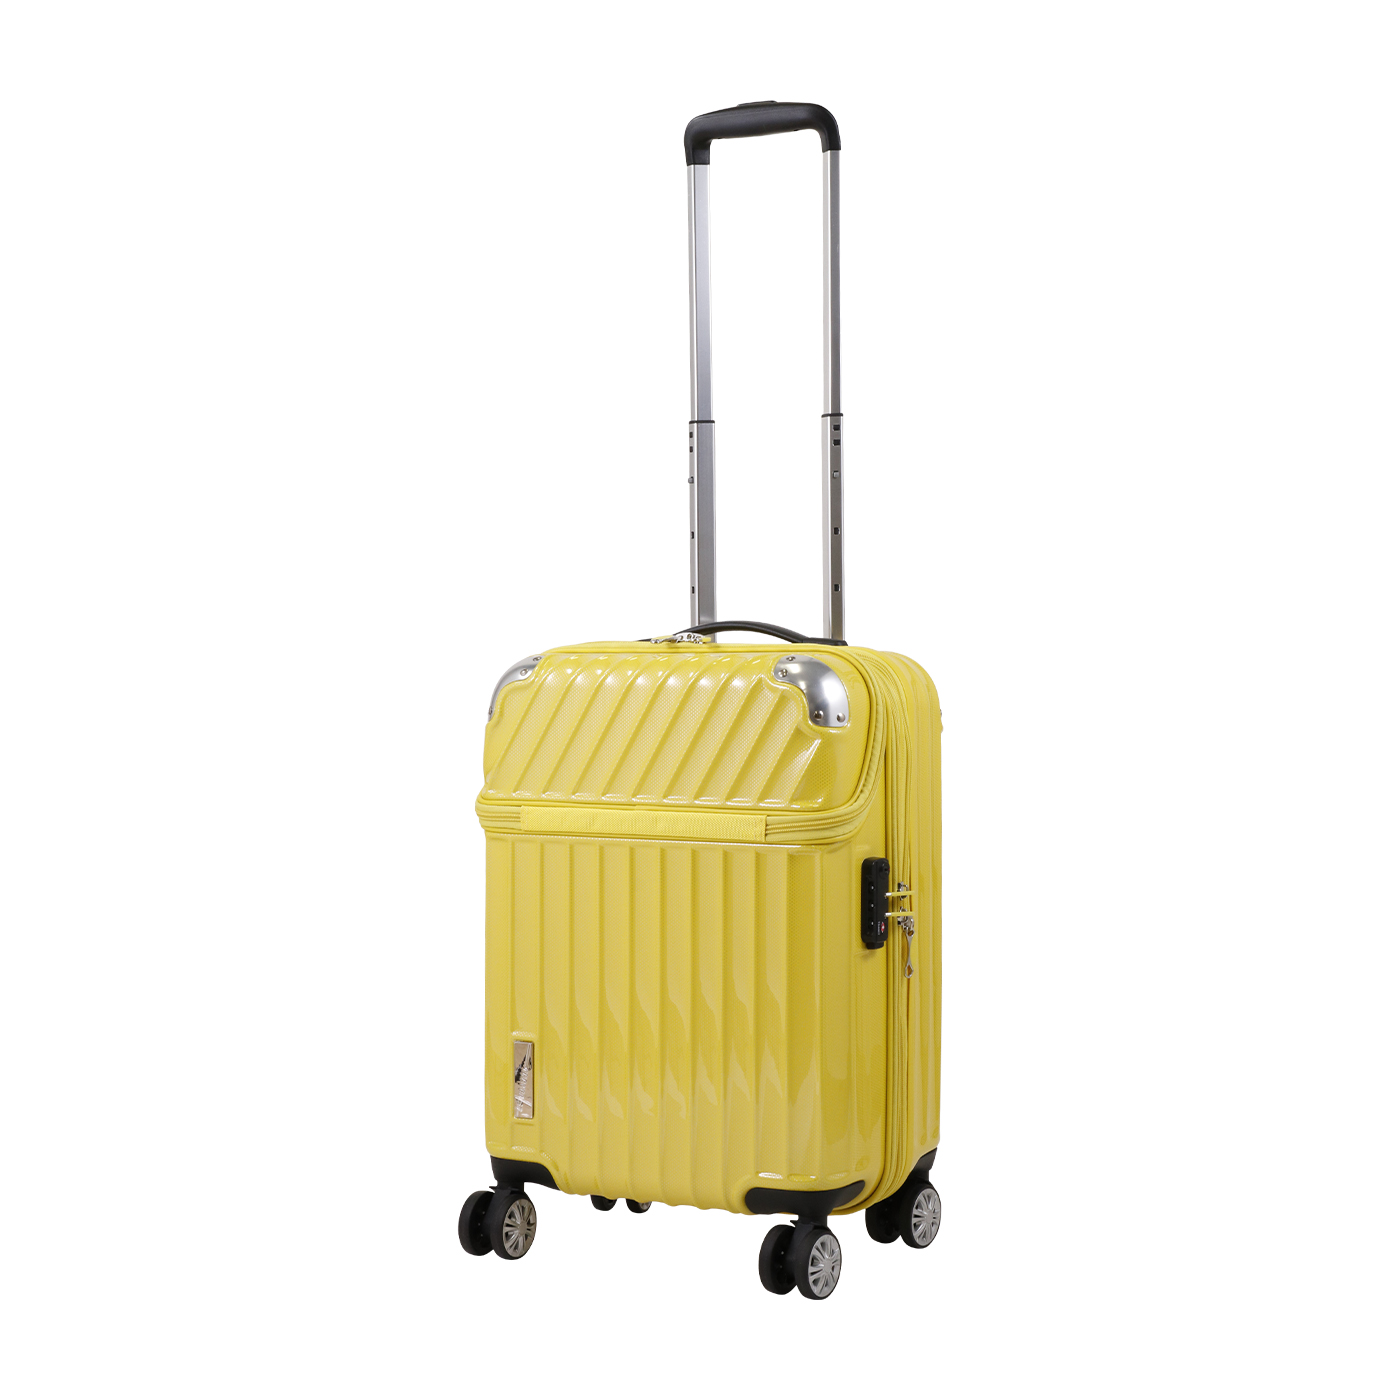 スーツケース USBポート付き キャリーケース M L Sサイズ ストッパー付き カップホルダー付き 3日~7日 大容量 超軽量 軽い おしゃれ かわいいダブルキャスター 中型  1年間保証 ファスナー  suitcase TANOBI PP308066